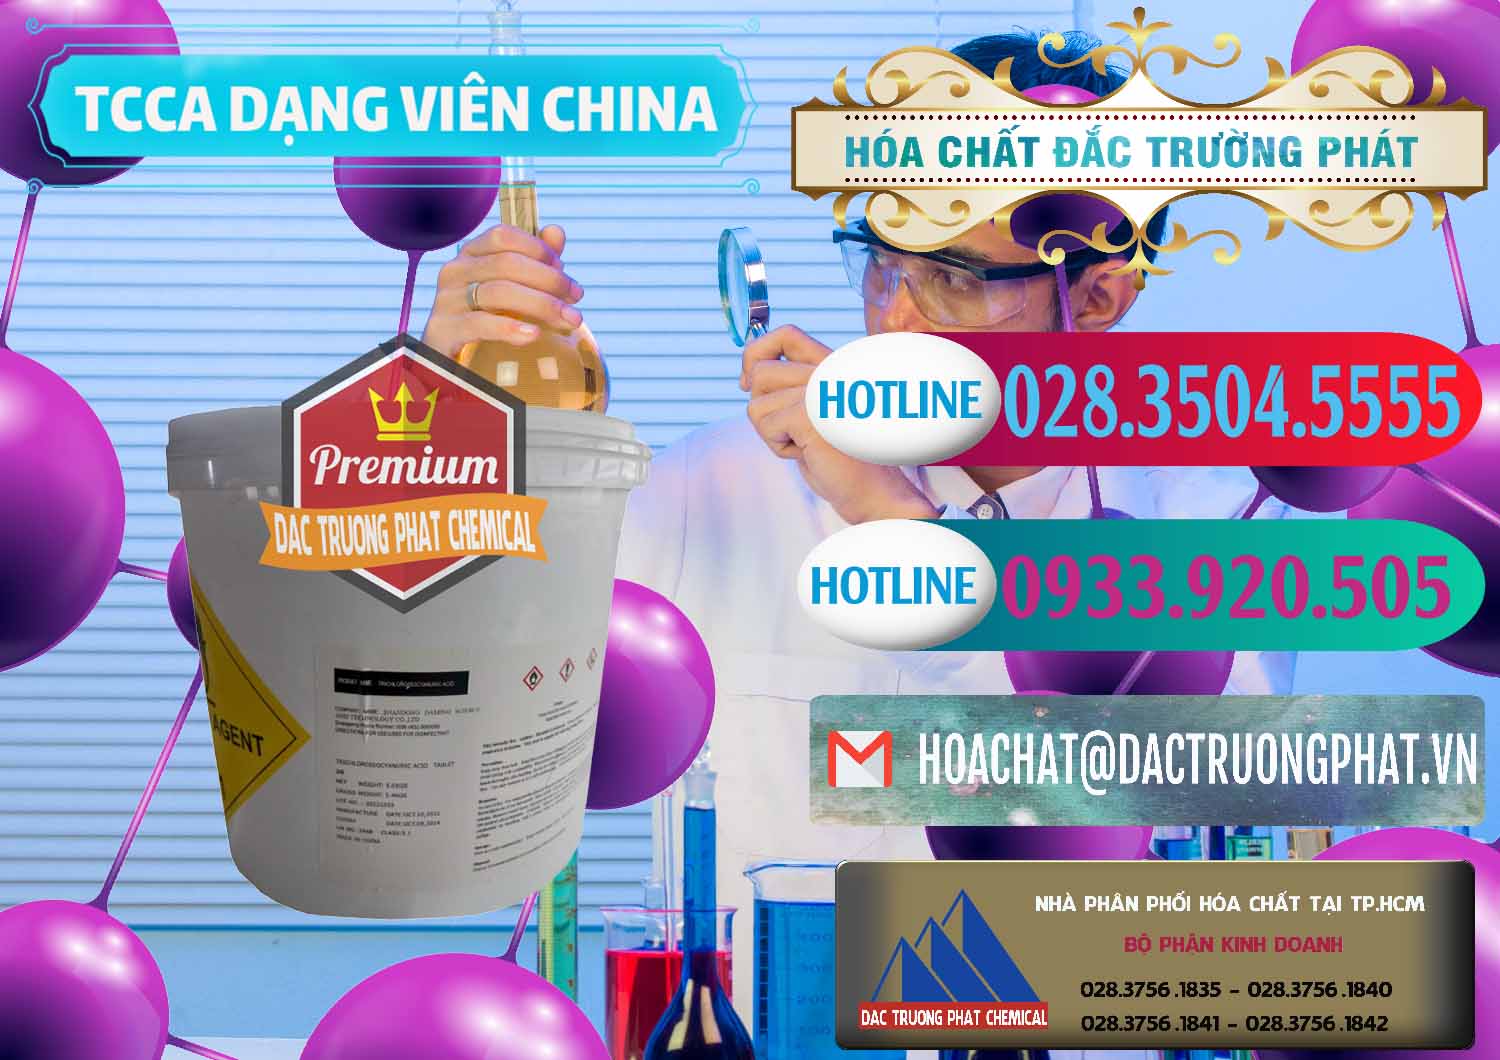 Nơi bán ( cung cấp ) TCCA - Acid Trichloroisocyanuric Dạng Viên Thùng 5kg Trung Quốc China - 0379 - Nơi chuyên phân phối & bán hóa chất tại TP.HCM - truongphat.vn